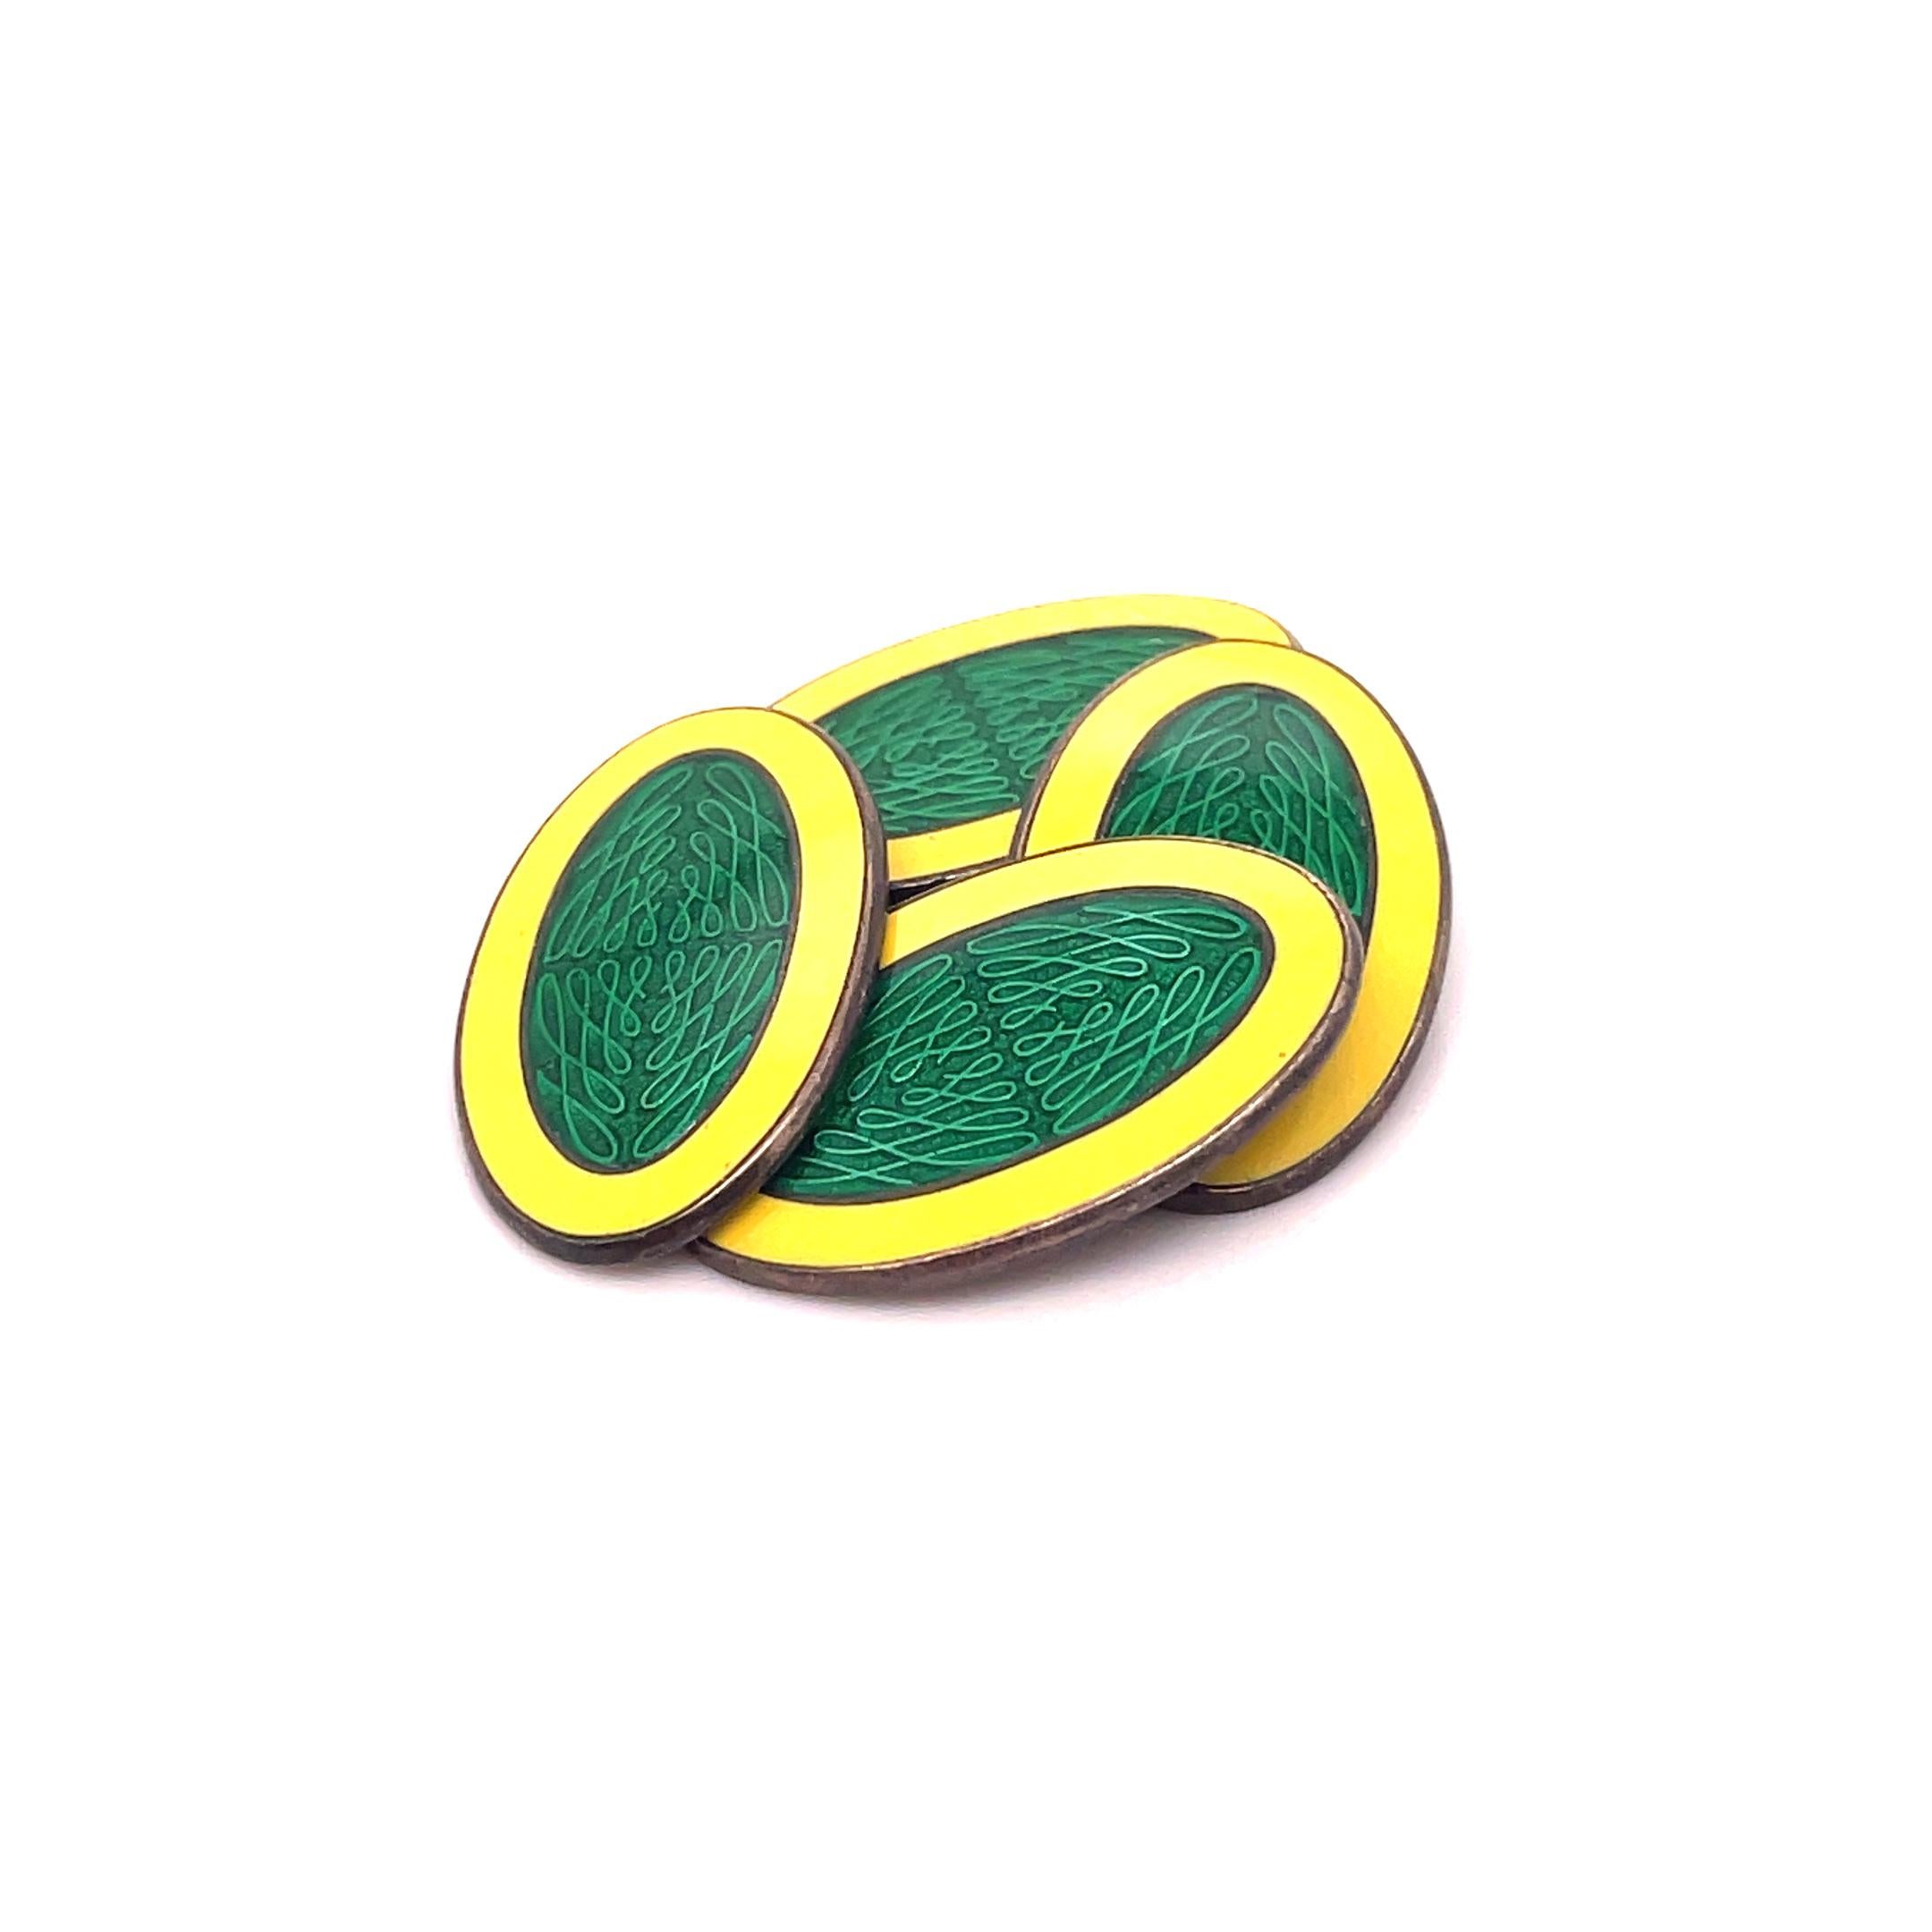 Il s'agit d'une remarquable paire de boutons de manchette Art déco signés par Krementz, qui présentent un superbe cadre jaune vif et un centre guilloché vert foncé. Ces boutons de manchette sont signés par Krementz et marqués Sterling. Le cadre